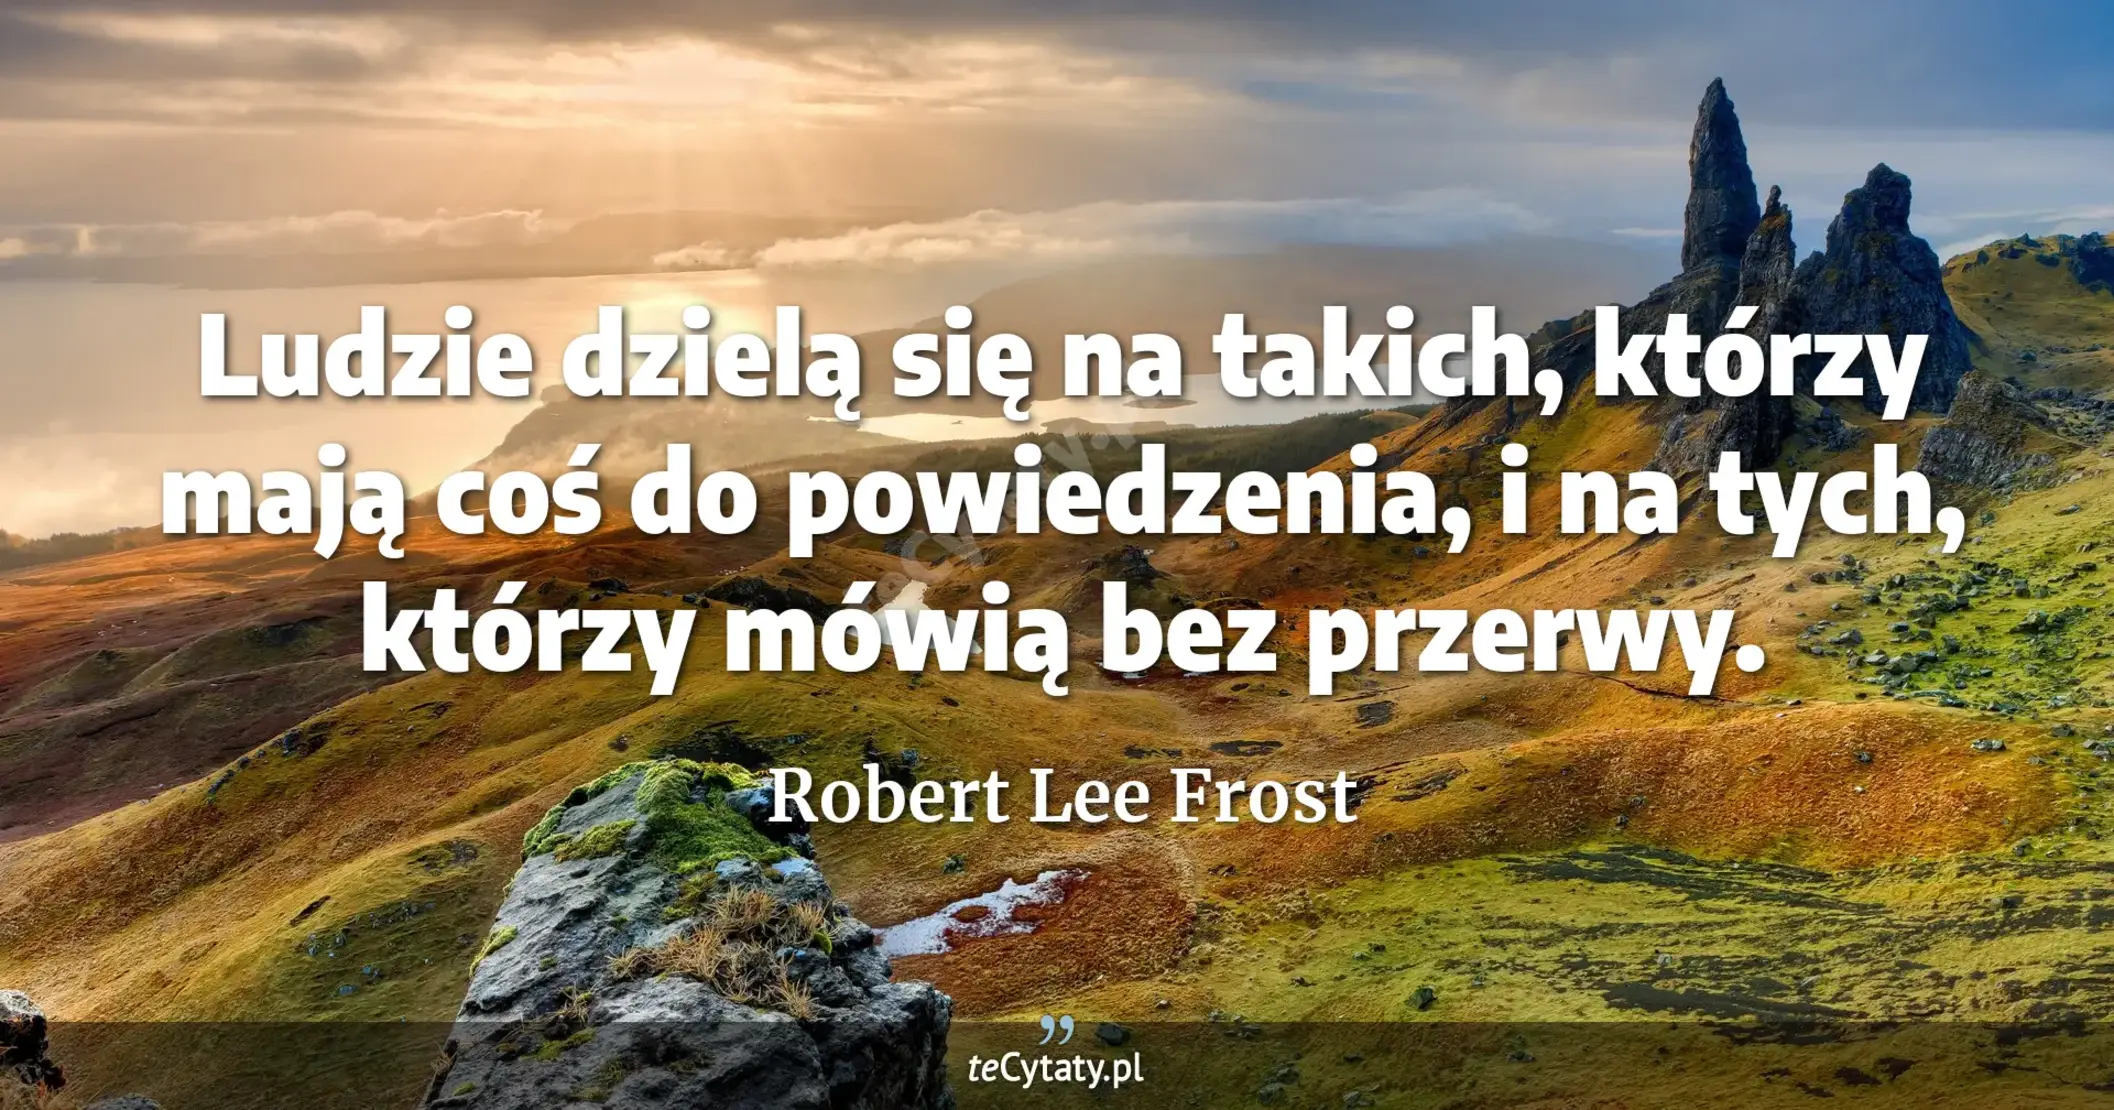 Ludzie dzielą się na takich, którzy mają coś do powiedzenia, i na tych, którzy mówią bez przerwy. - Robert Lee Frost